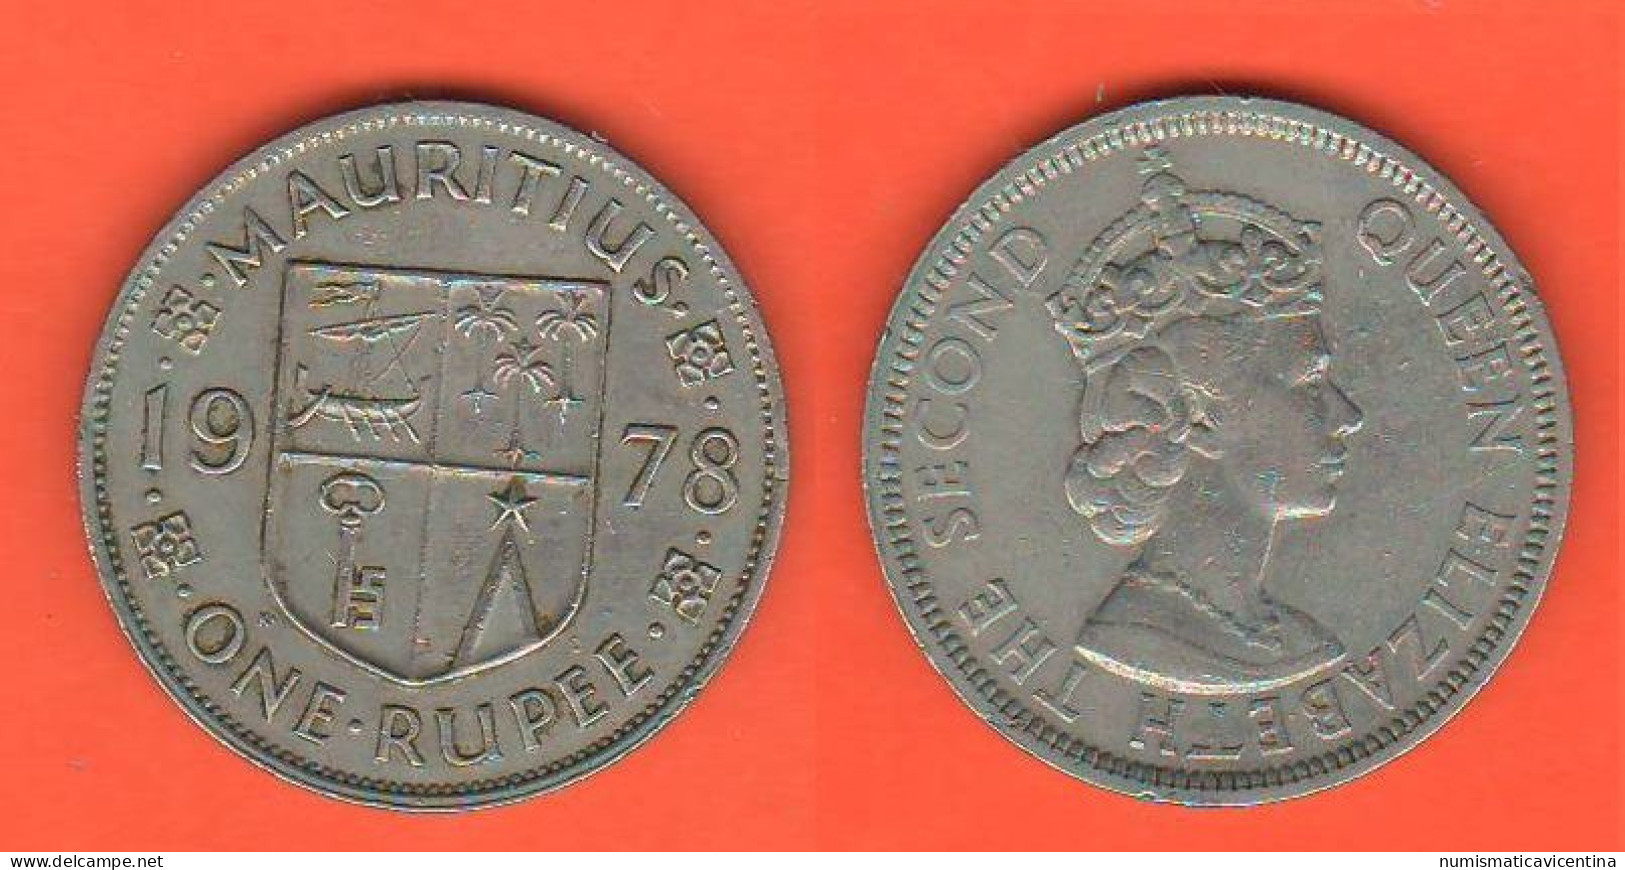 Mauritius One Rupee 1978 Nickel Coin Queen Elizabeth II° - Mauricio